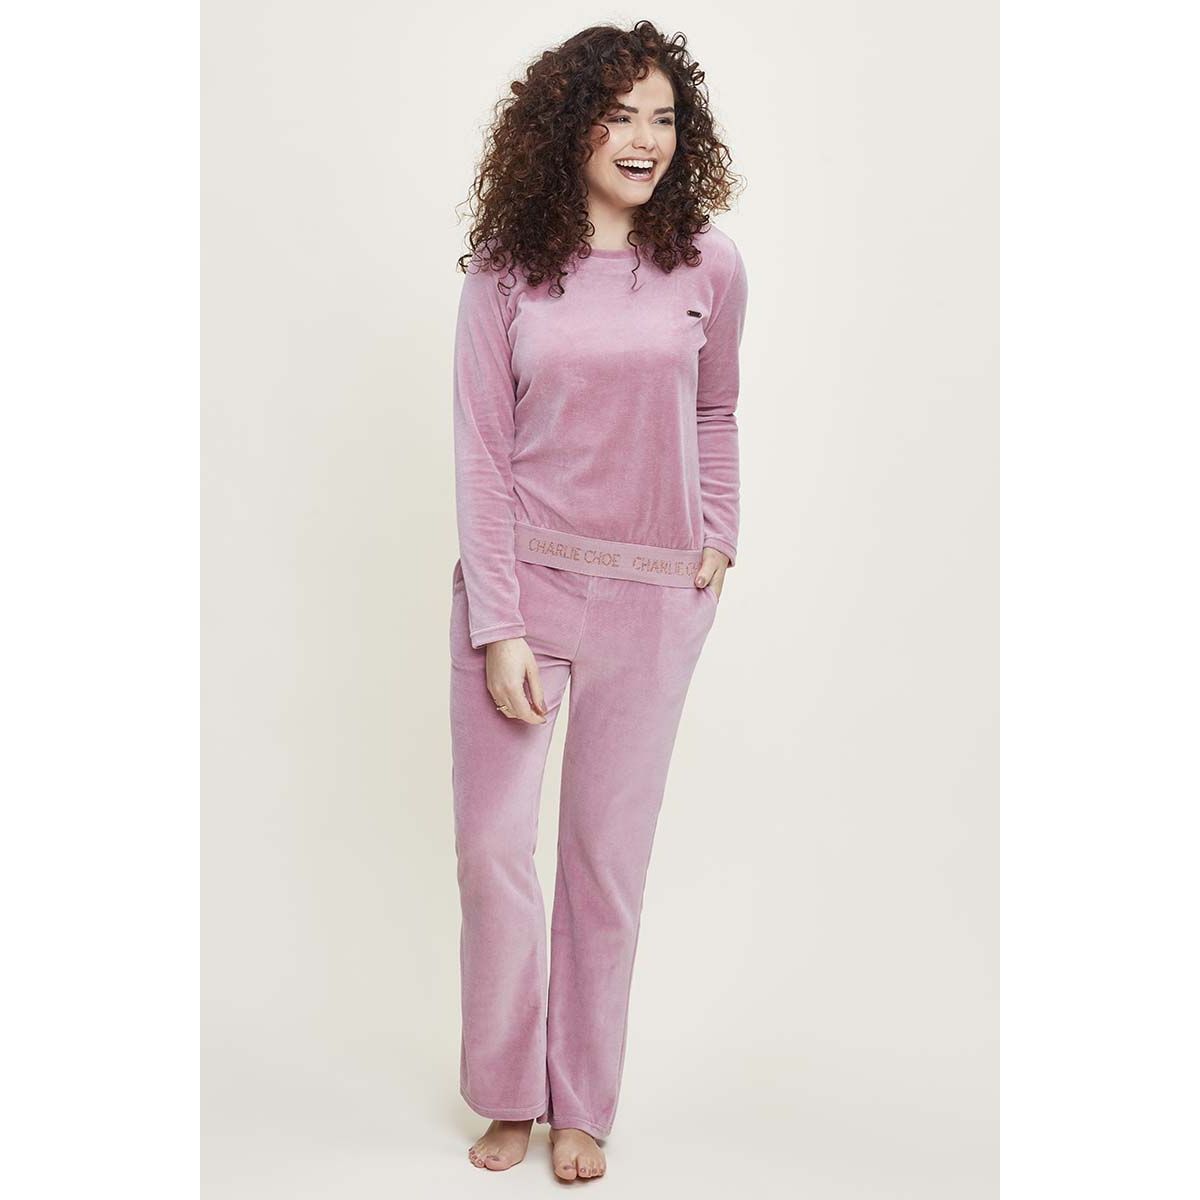 Roze velours Charlie Choe | Gratis verzending en retour | Online de mooiste pyjama's, nachthemden, ondermode en meer